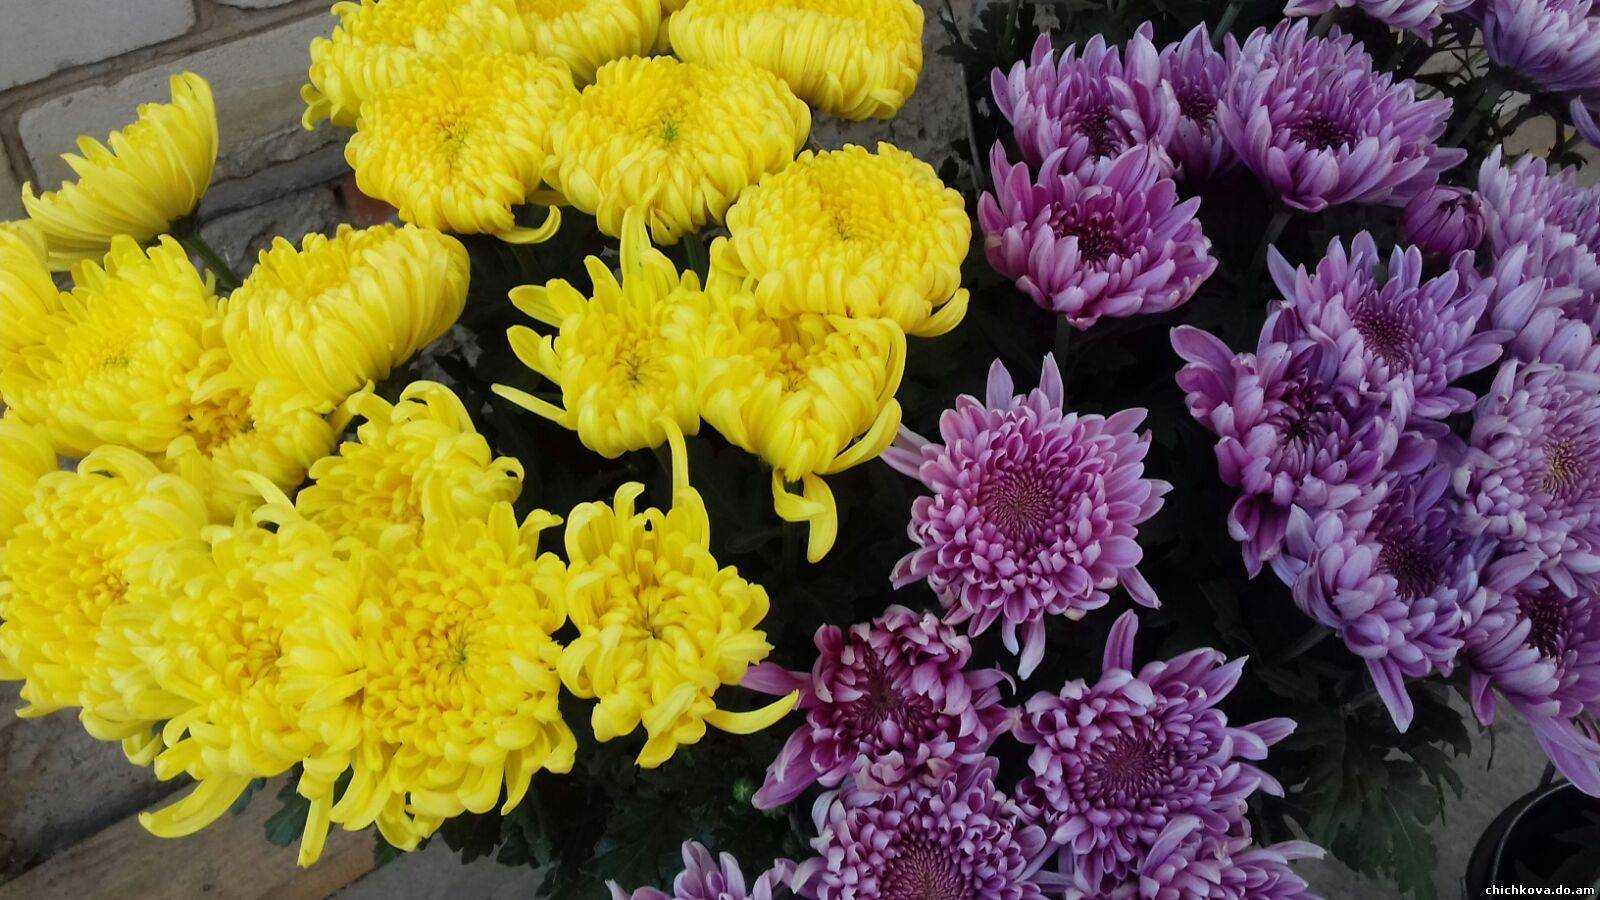 Выращивание хризантем на продажу, или цветы как бизнес. технология выращивания. фото — ботаничка.ru